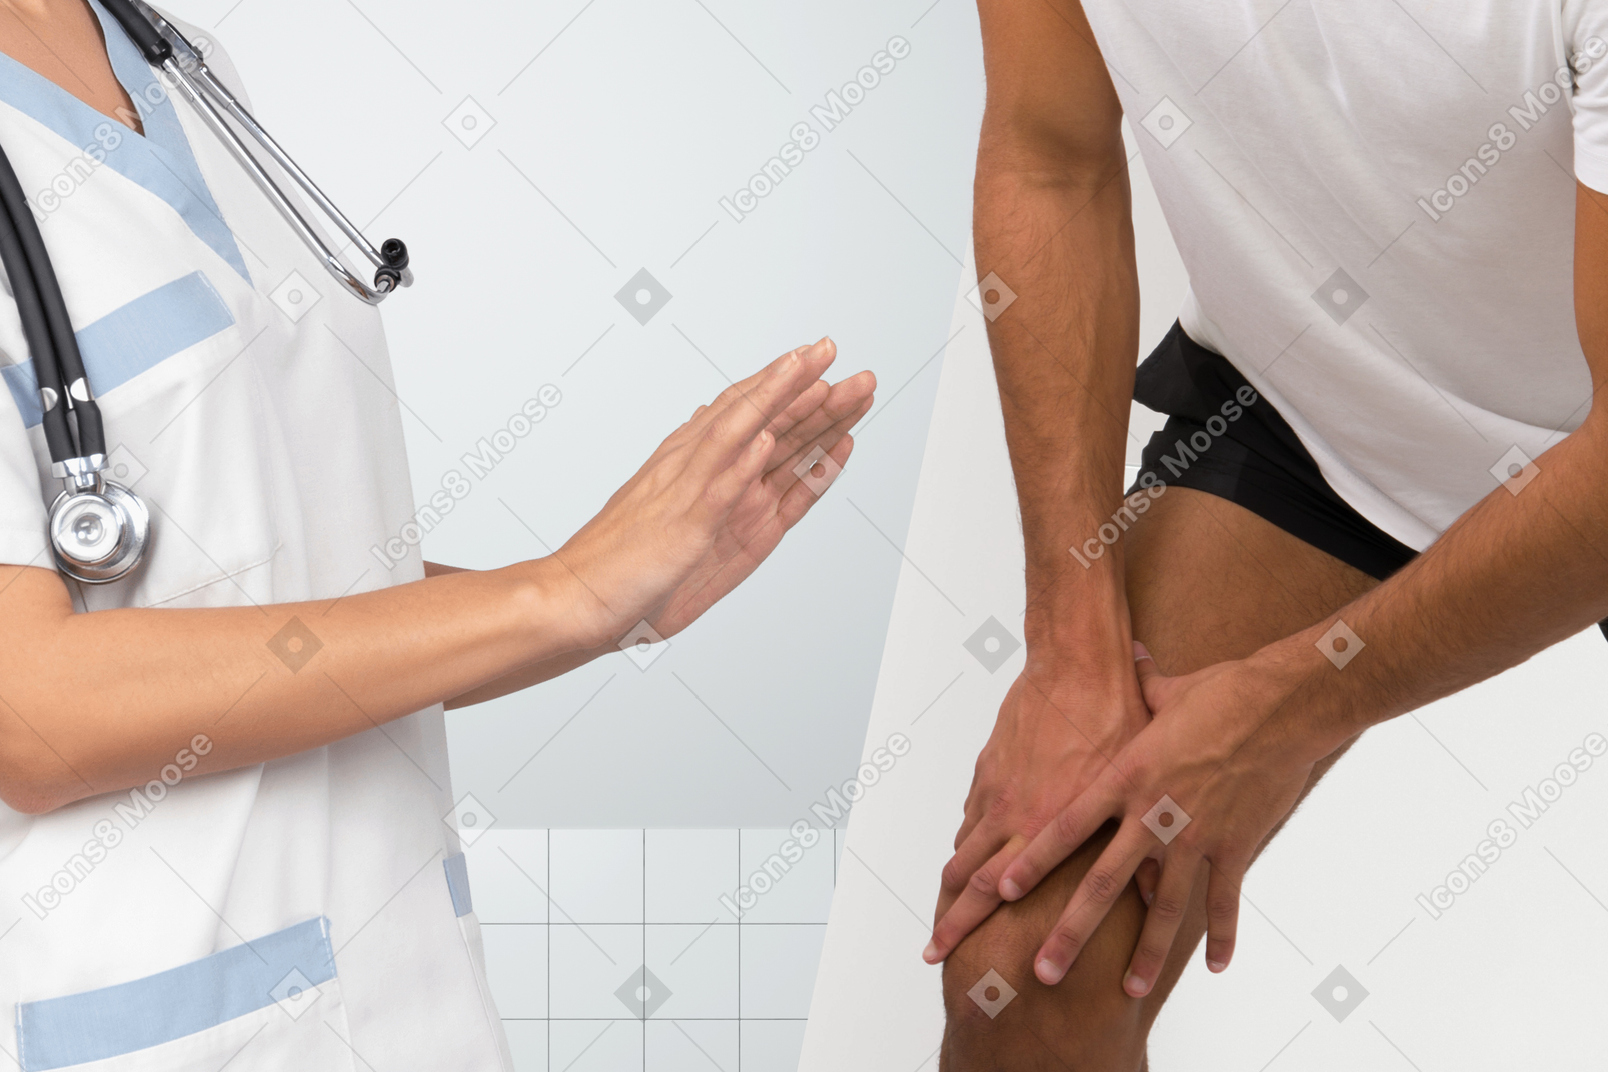 Le patient se plaint de douleurs aux jambes